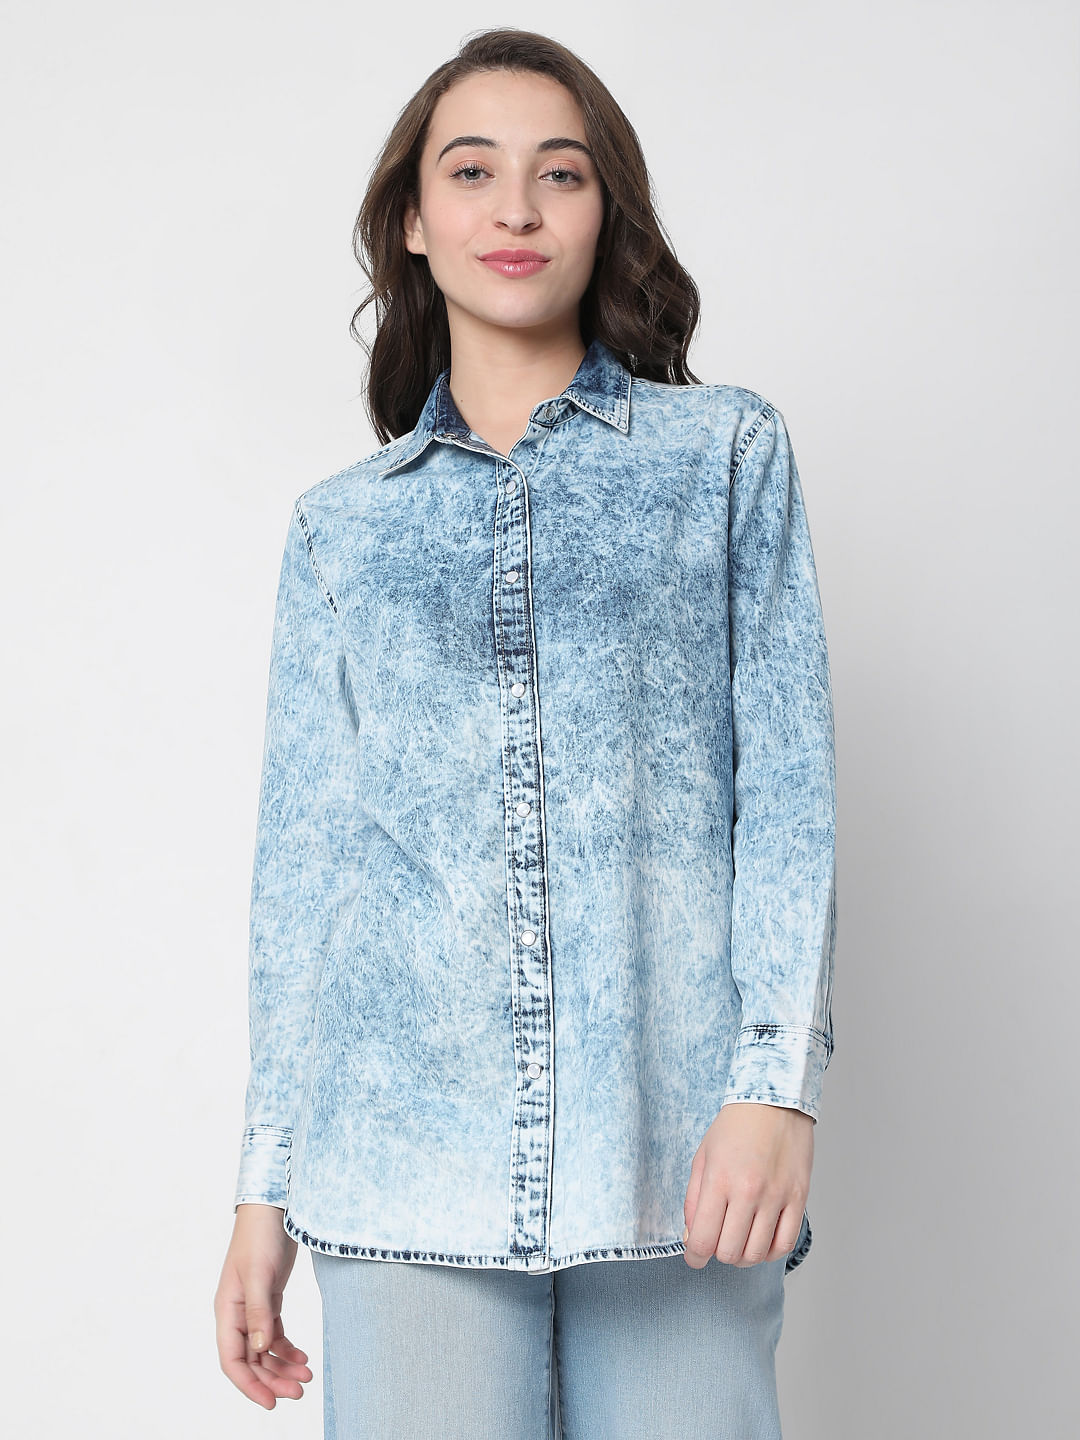 Lace Back Denim Shirt | Shop Old Blouse & Shirts at Papaya Clothing